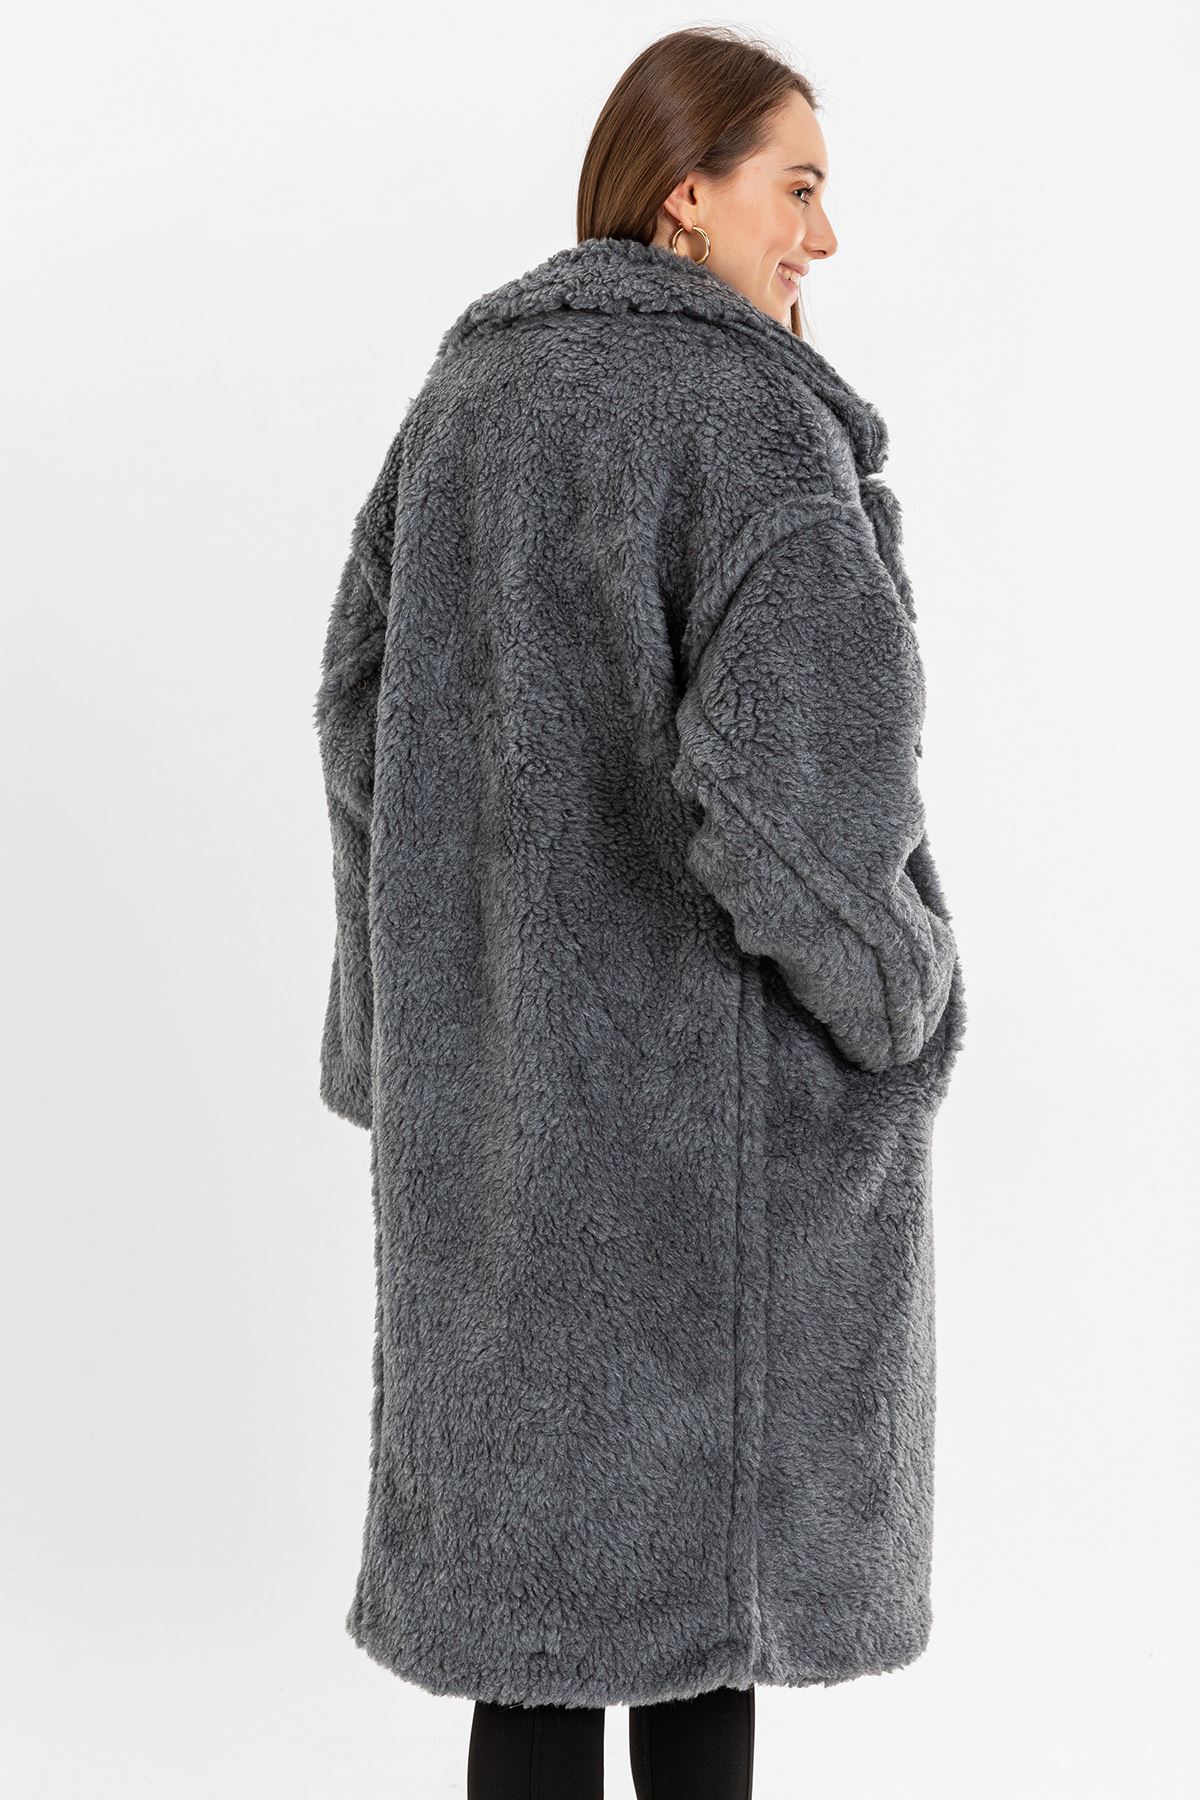 Teddy Fabric Long Sleeve Revere Collar Below Knees Oversize Women'S Coat - Grey